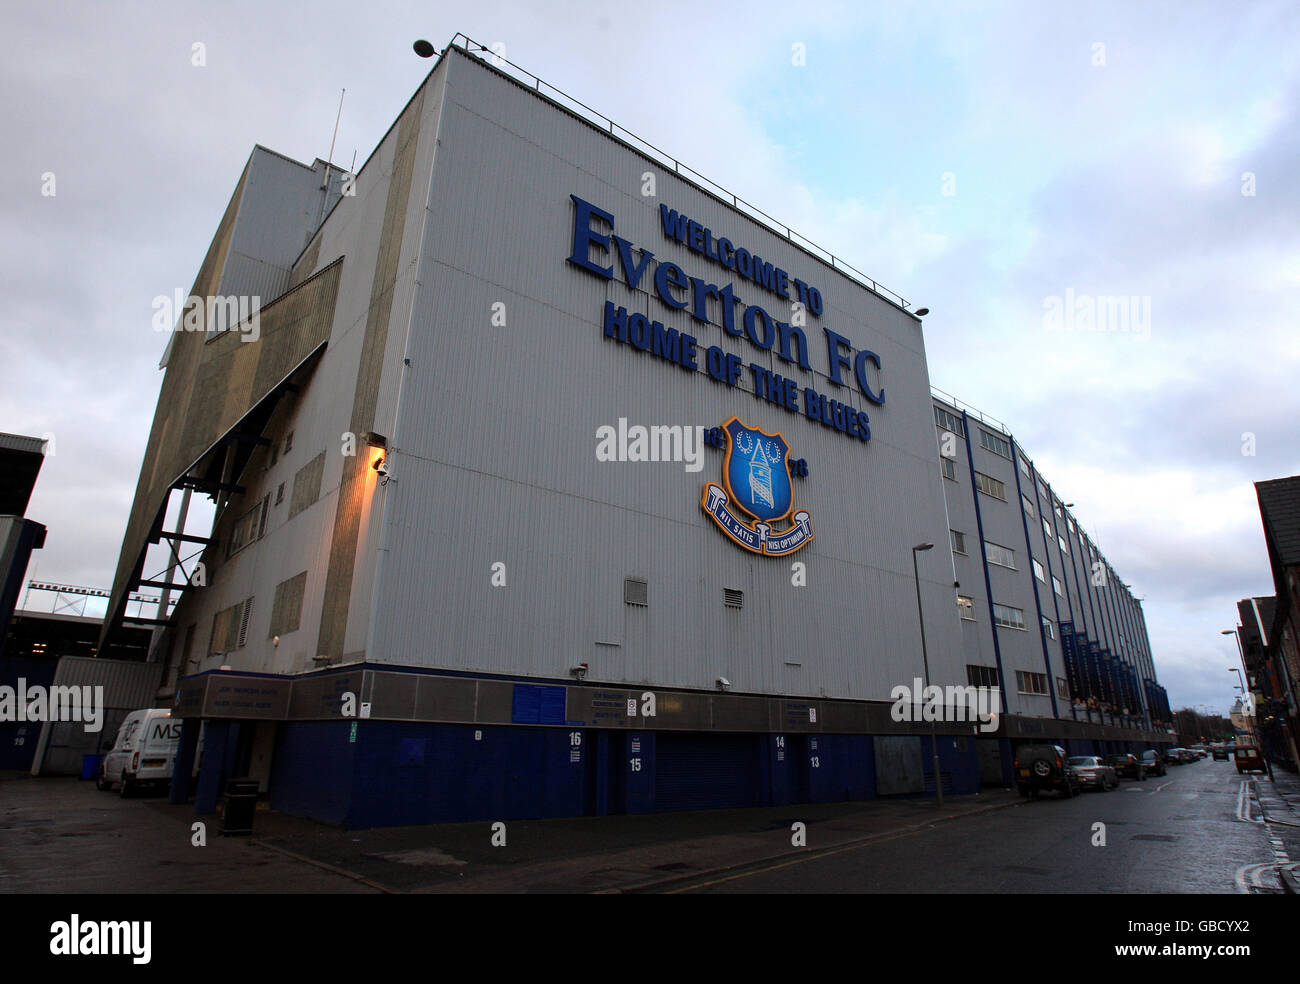 Fútbol - Barclays Premier League - Everton - Goodison Park. Goodison Park, hogar del Everton FC Foto de stock